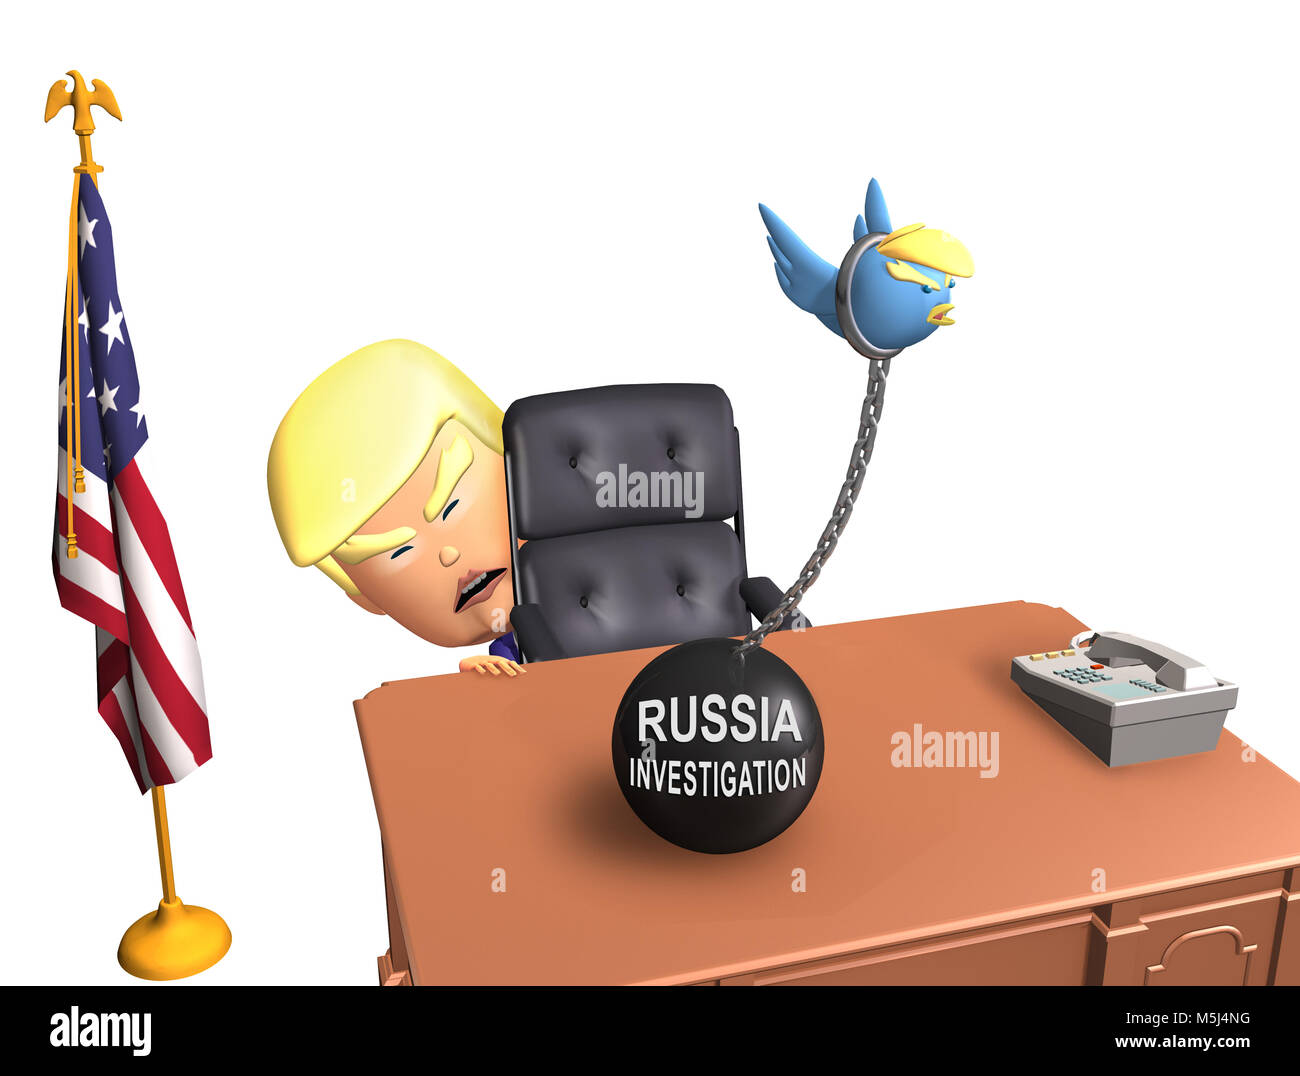 Donald Trump - Russia Investigation Stock Photo